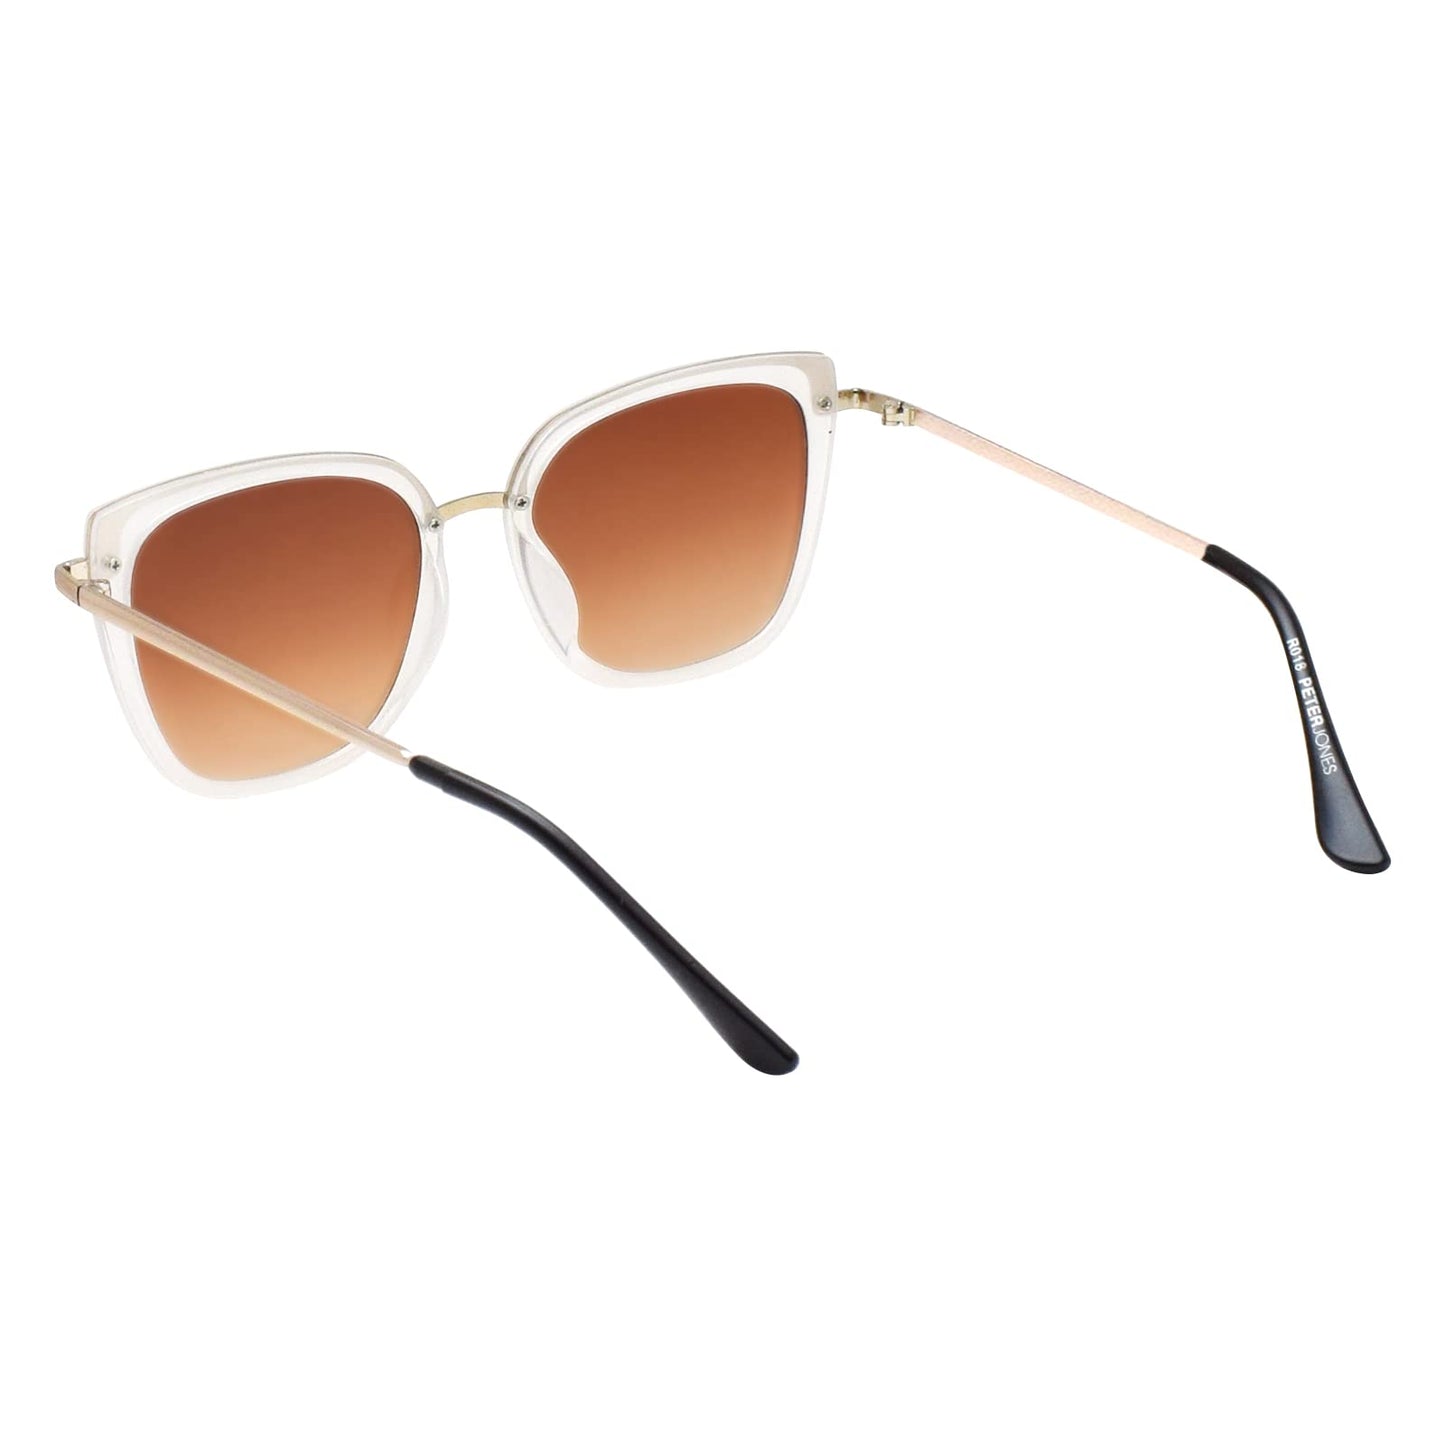 Peter Jones UV Protected Retro Cateye Sunglasses for Women/Girls